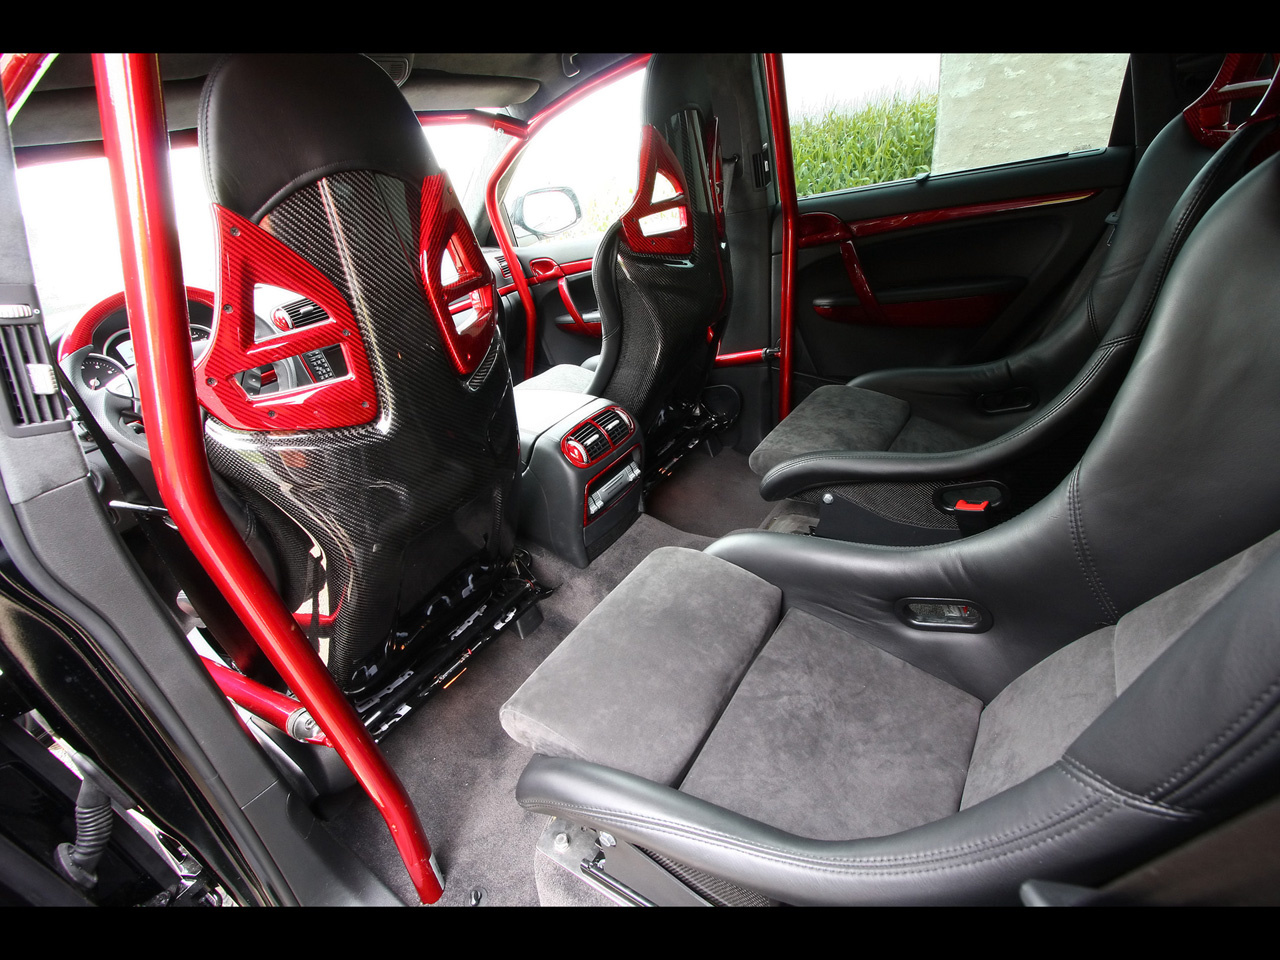 2010-Enco-Gladiator-700-Porsche-Cayenne-GT-Biturbo-Interior-2-12